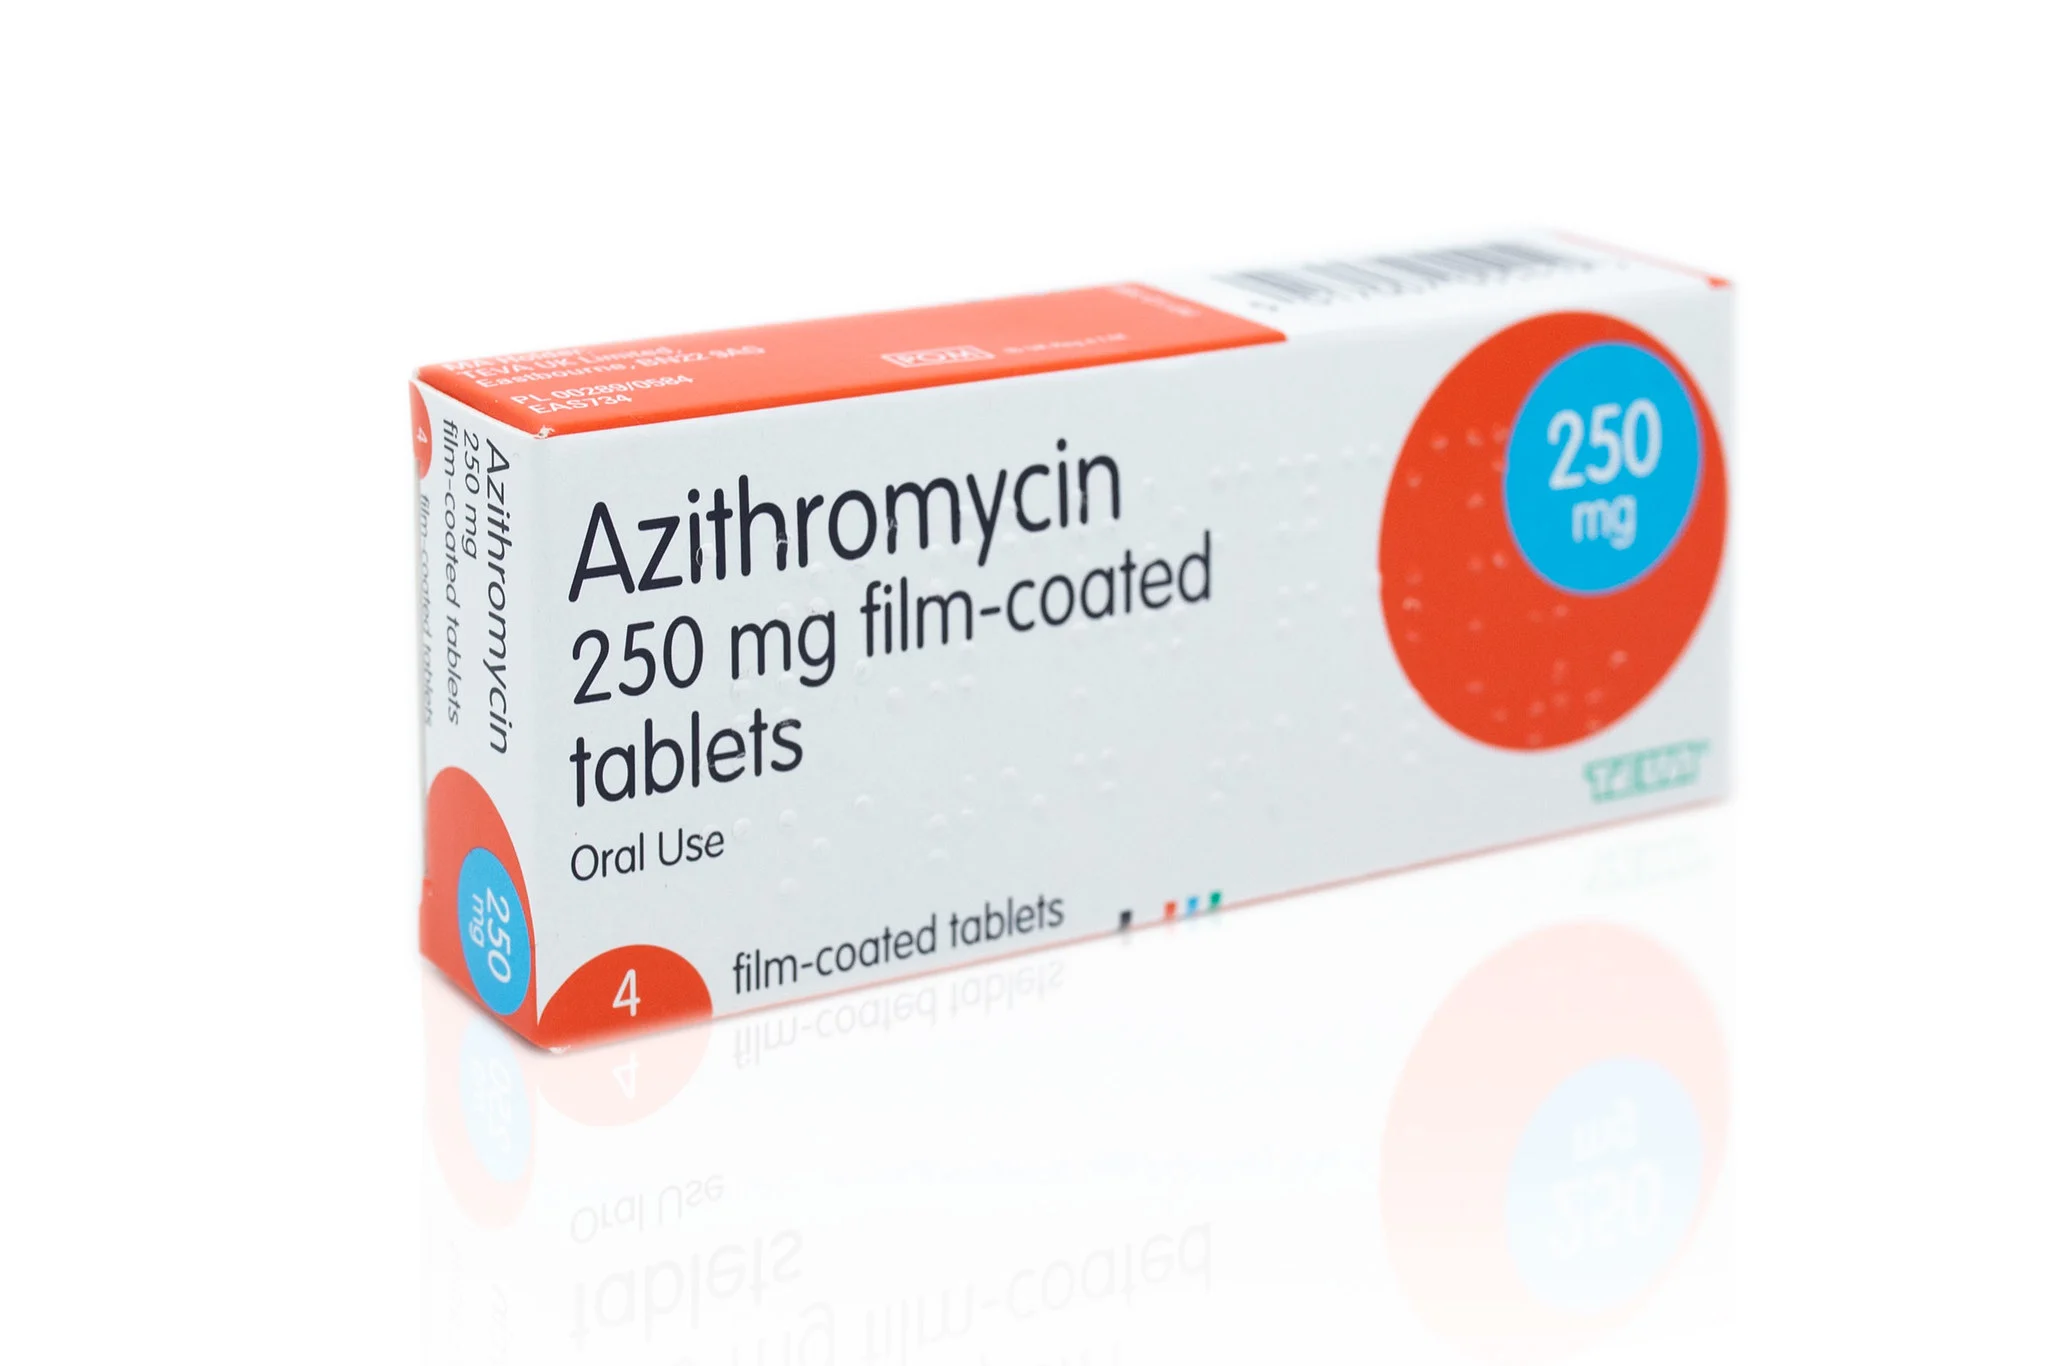 أزيثروميسين (Azithromycin)